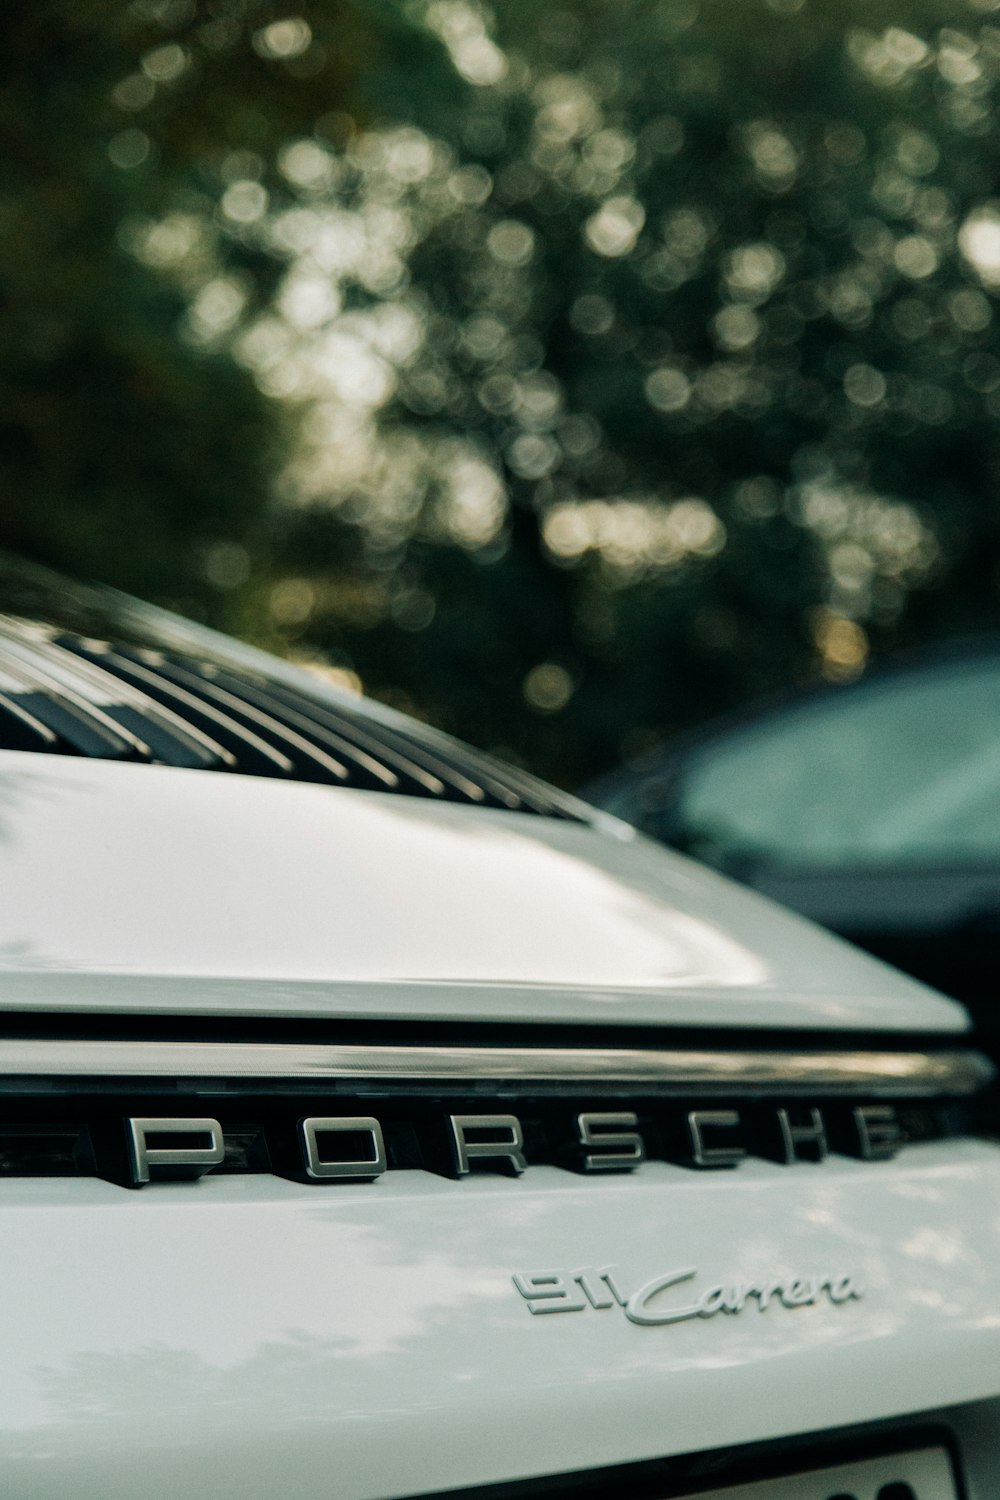 a close up of a porsche logo on a car